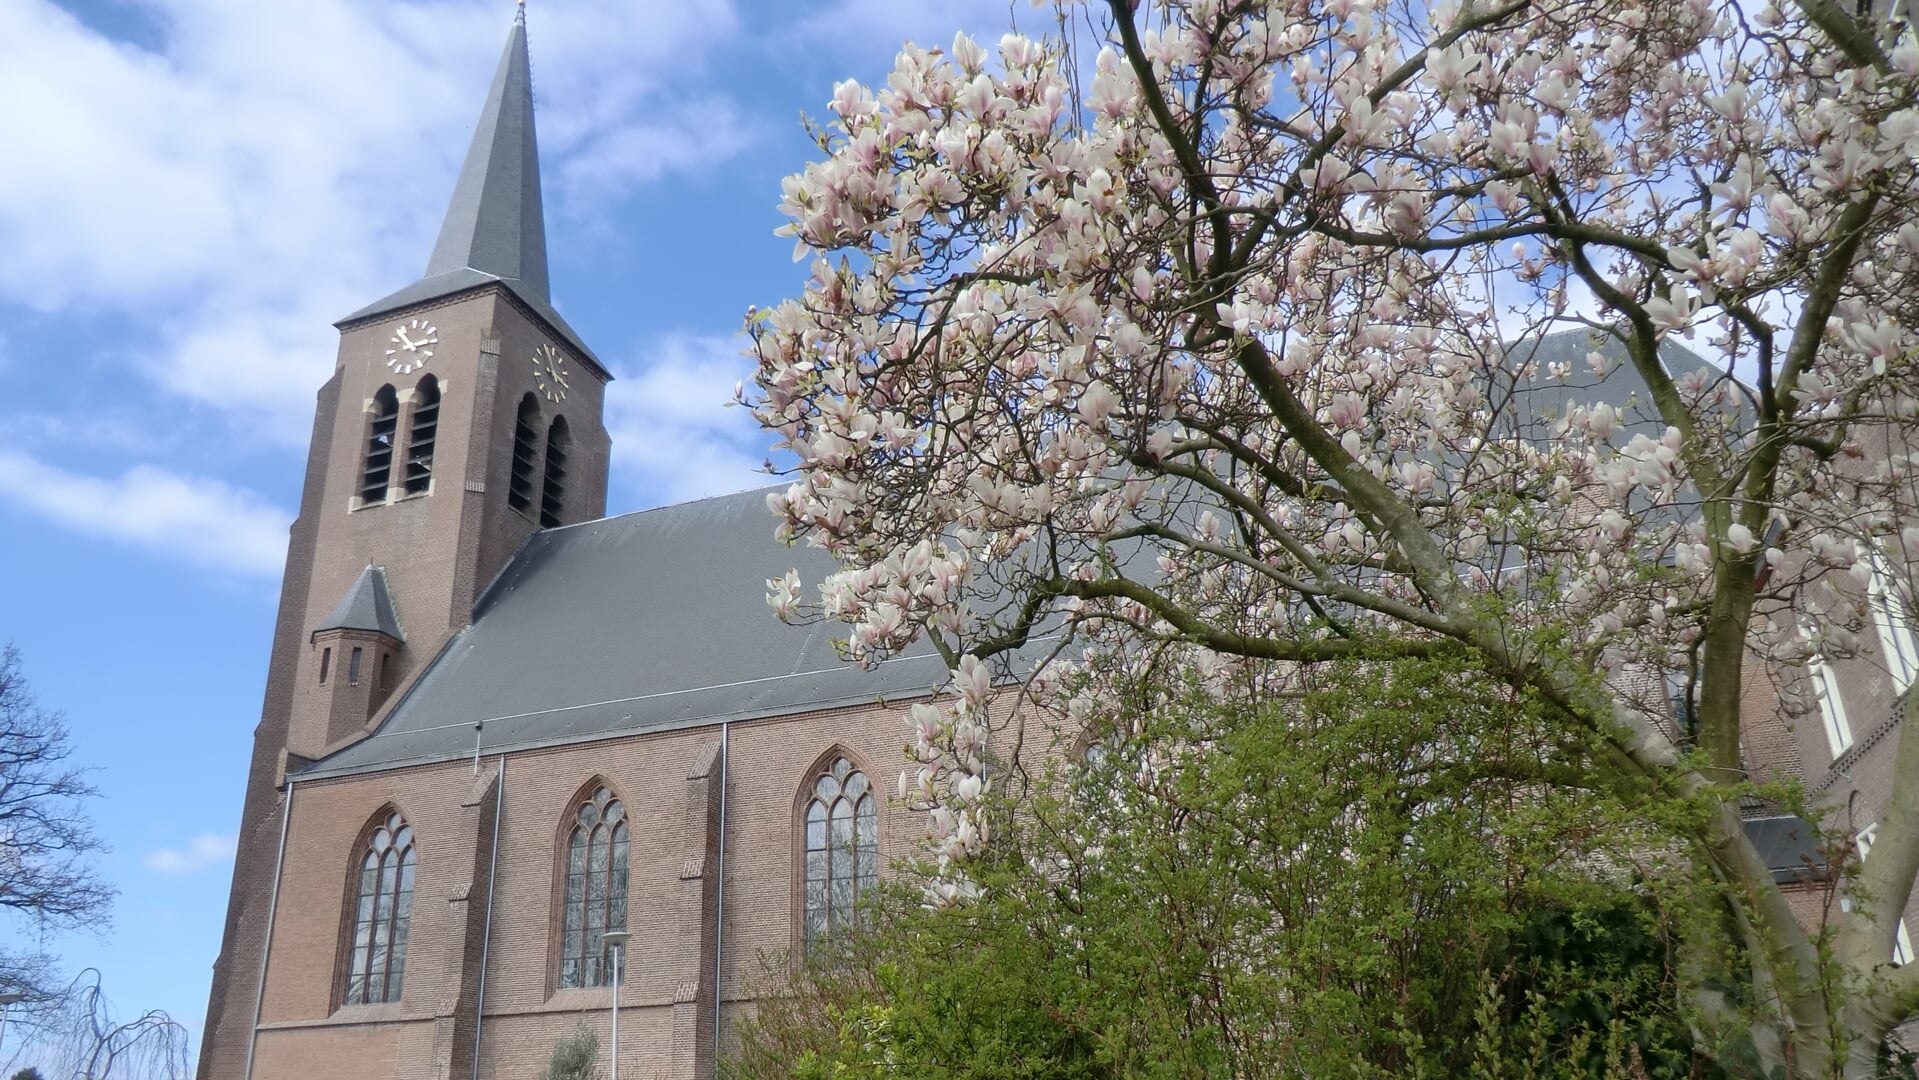 De Sint Martinuskerk in Hoogland is een van de kerken die wordt besproken in de video hieronder. 